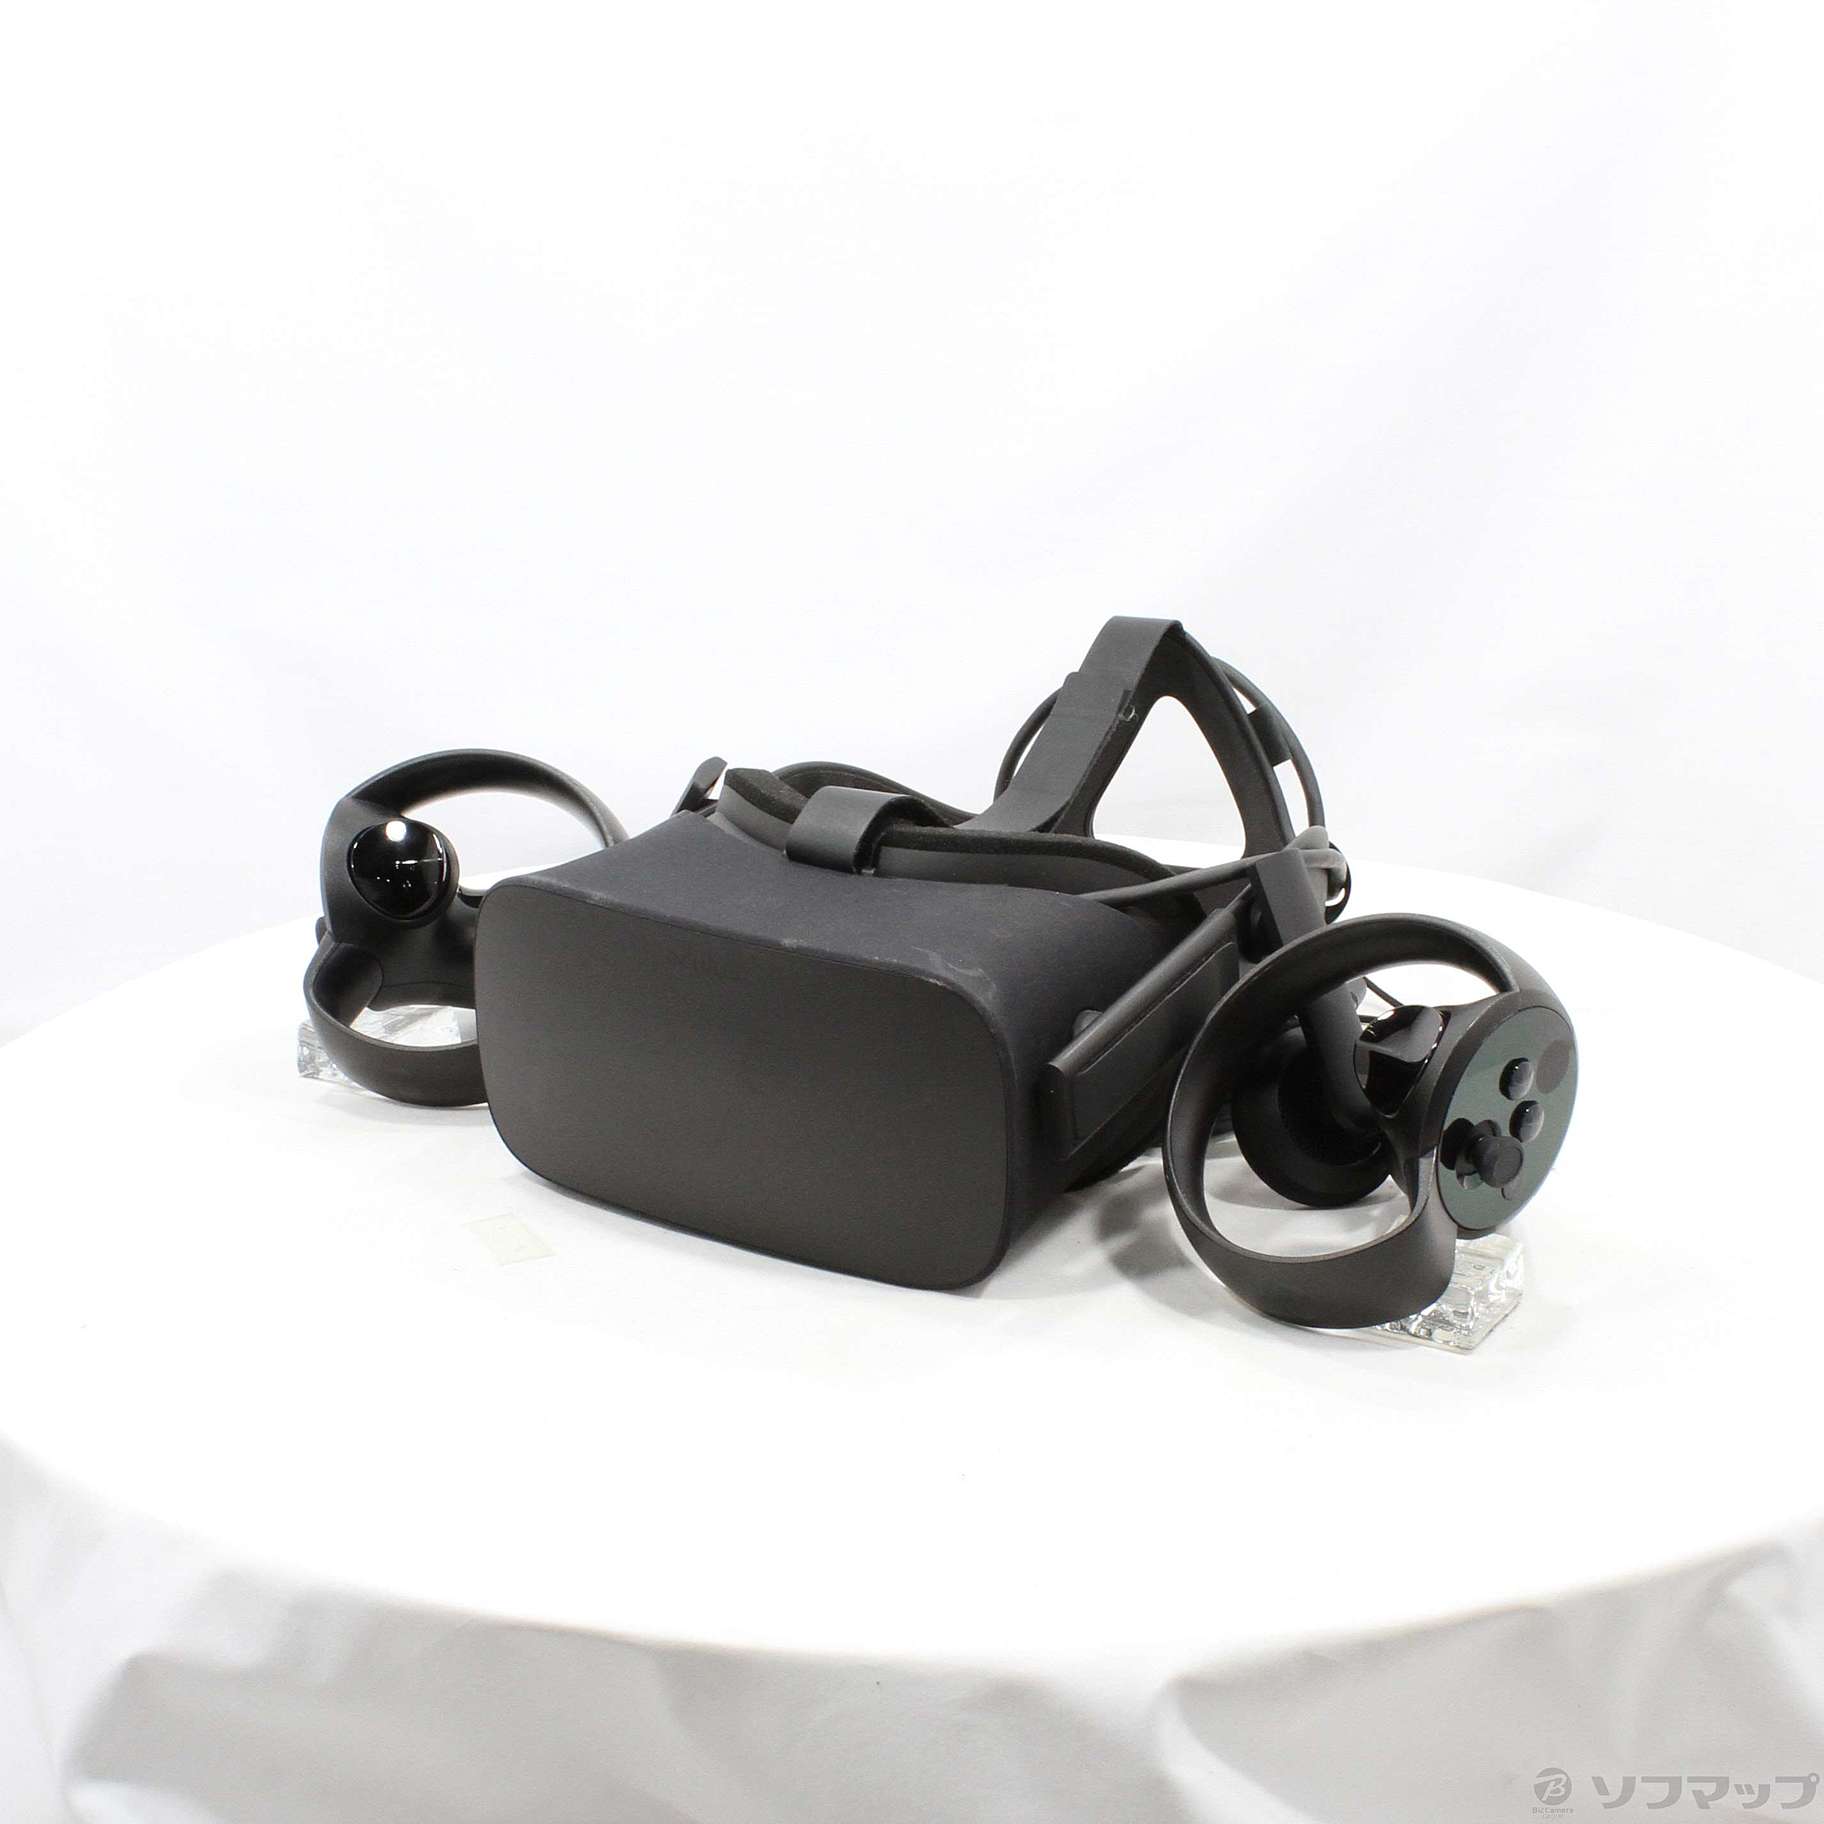 中古】セール対象品 Oculus Rift CV1 (輸入品) [2133046472499